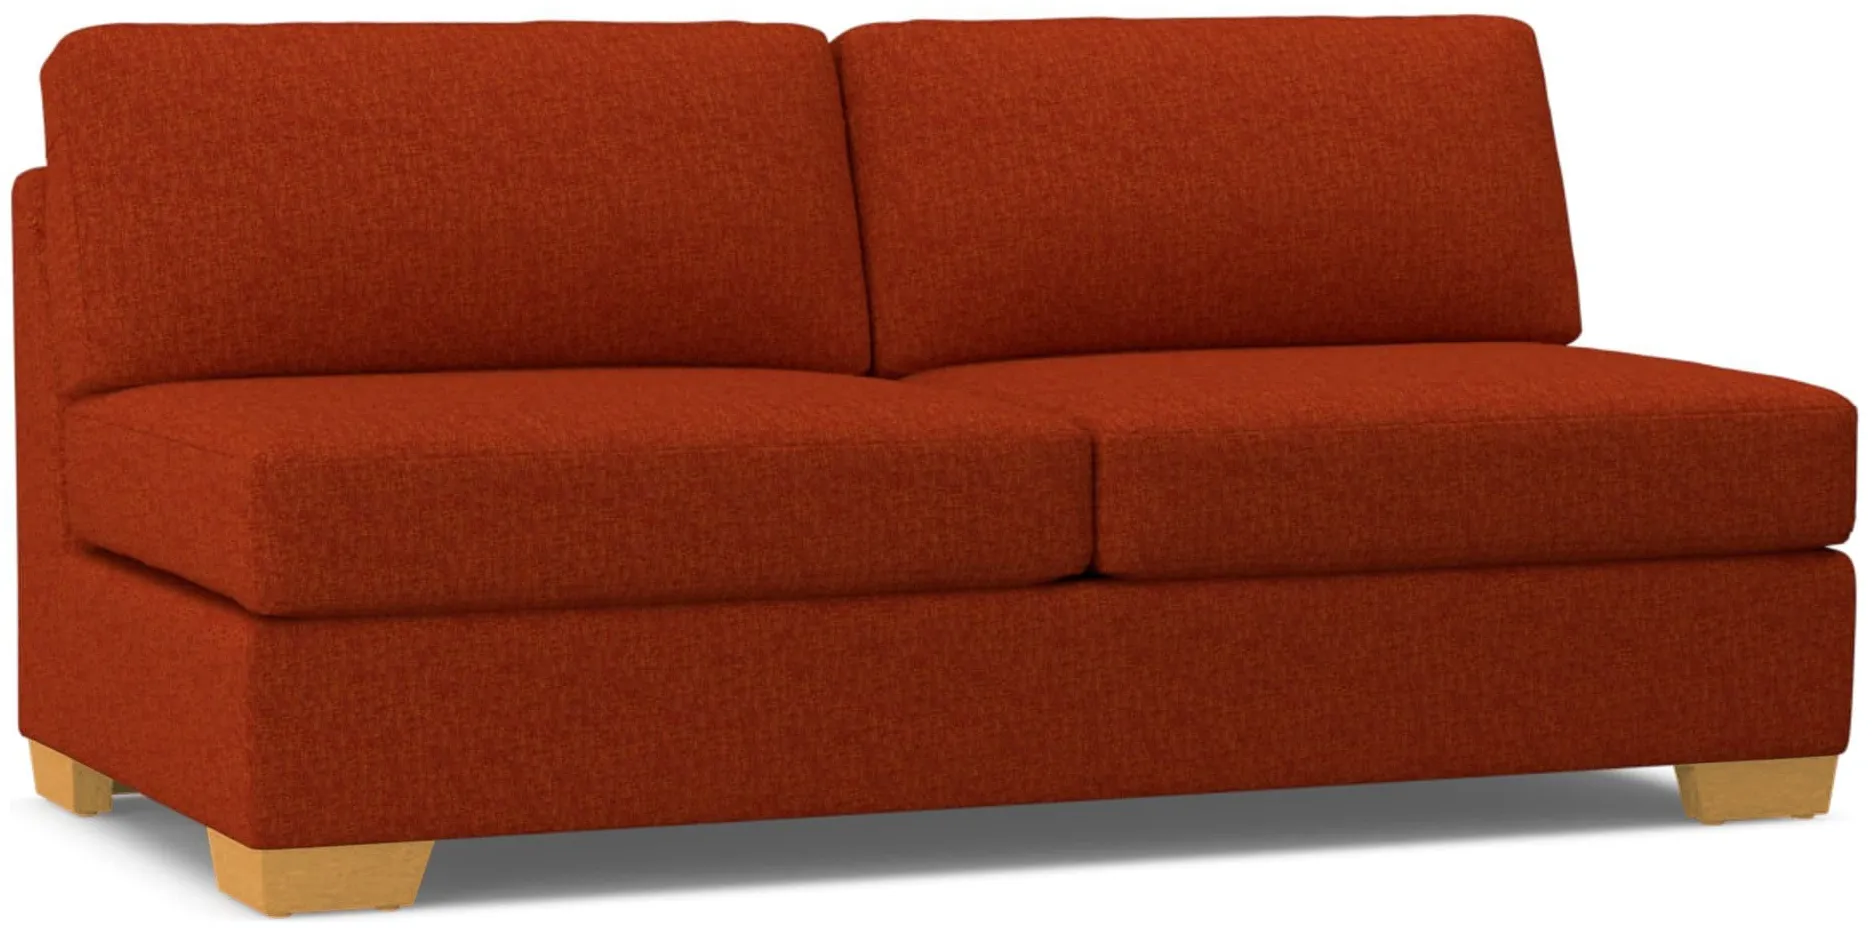 Melrose Armless Sofa